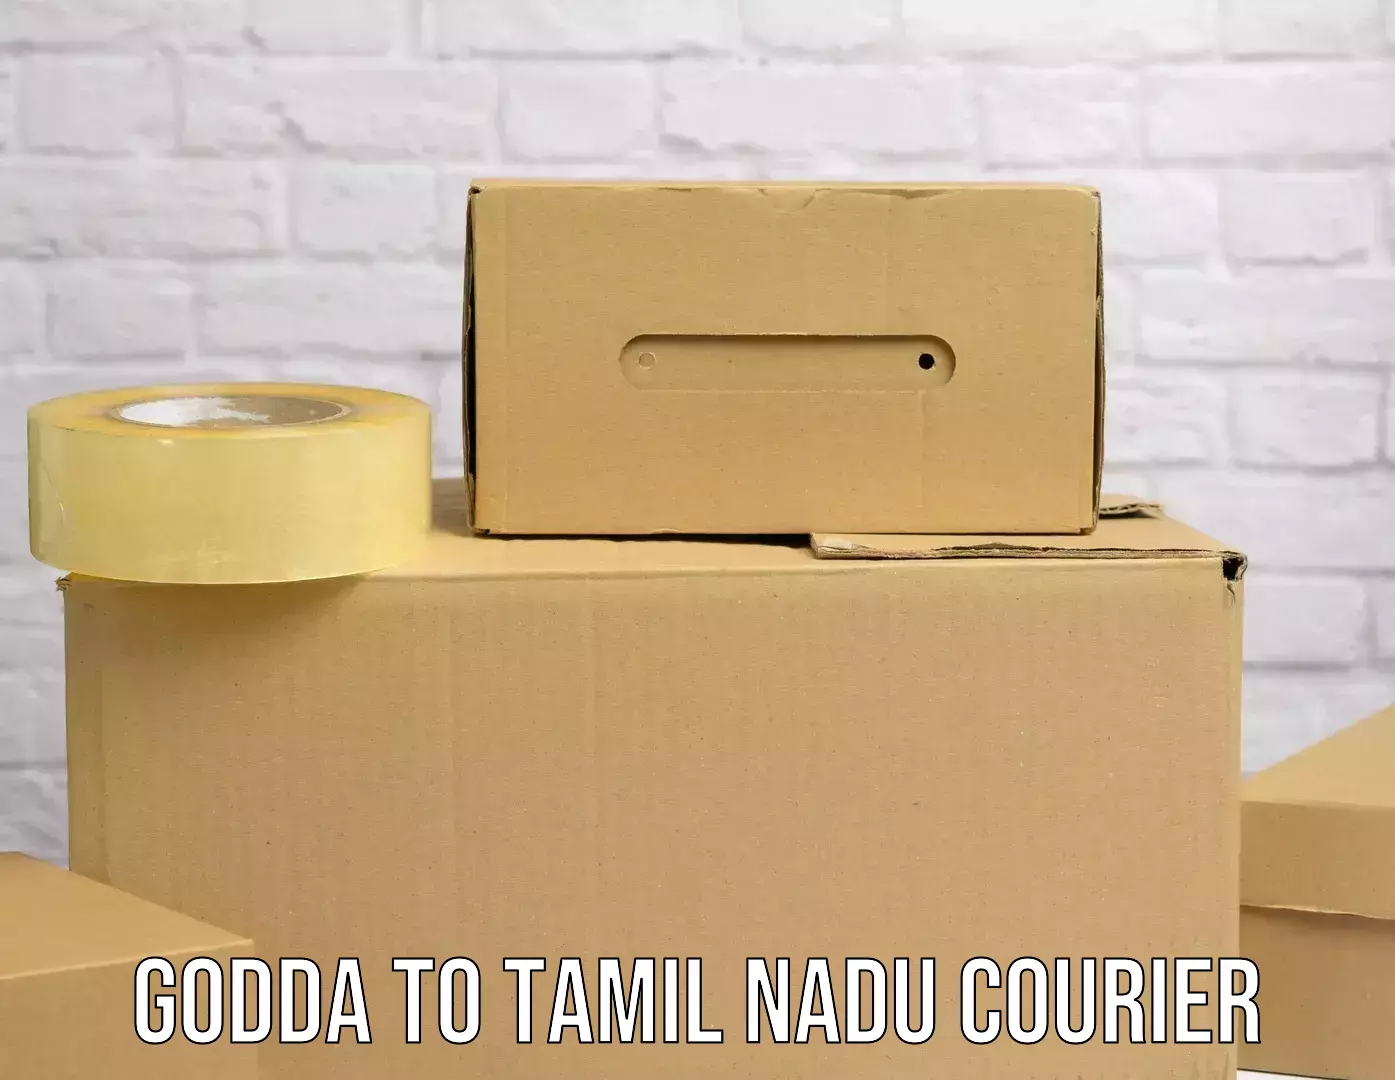 Local delivery service Godda to Tamil Nadu